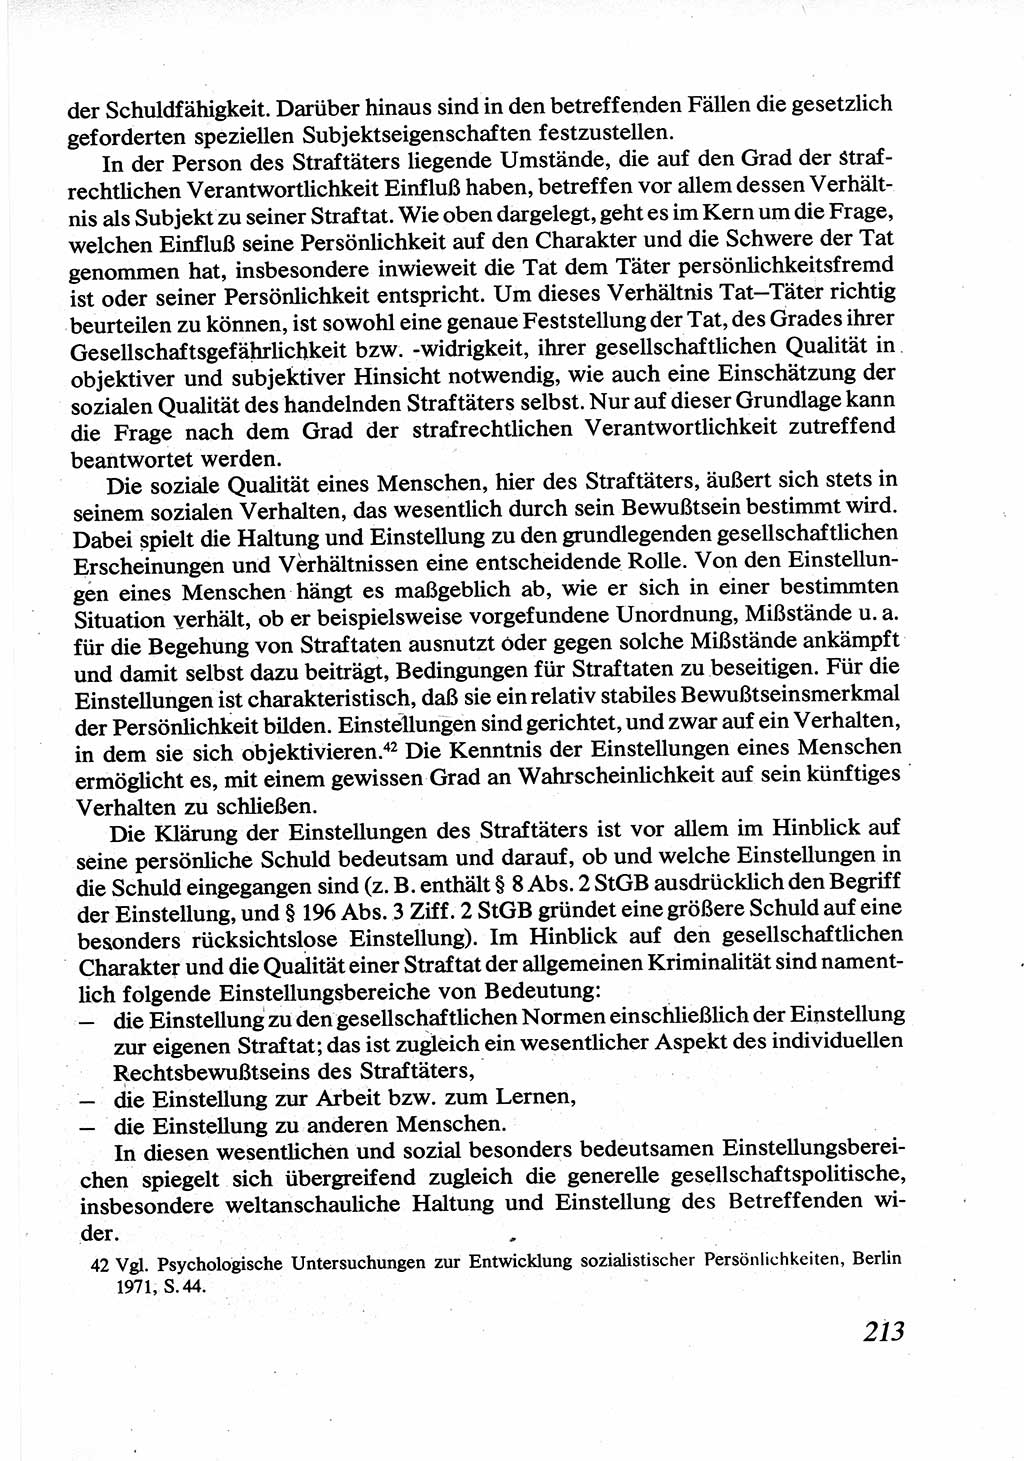 Strafrecht [Deutsche Demokratische Republik (DDR)], Allgemeiner Teil, Lehrbuch 1976, Seite 213 (Strafr. DDR AT Lb. 1976, S. 213)